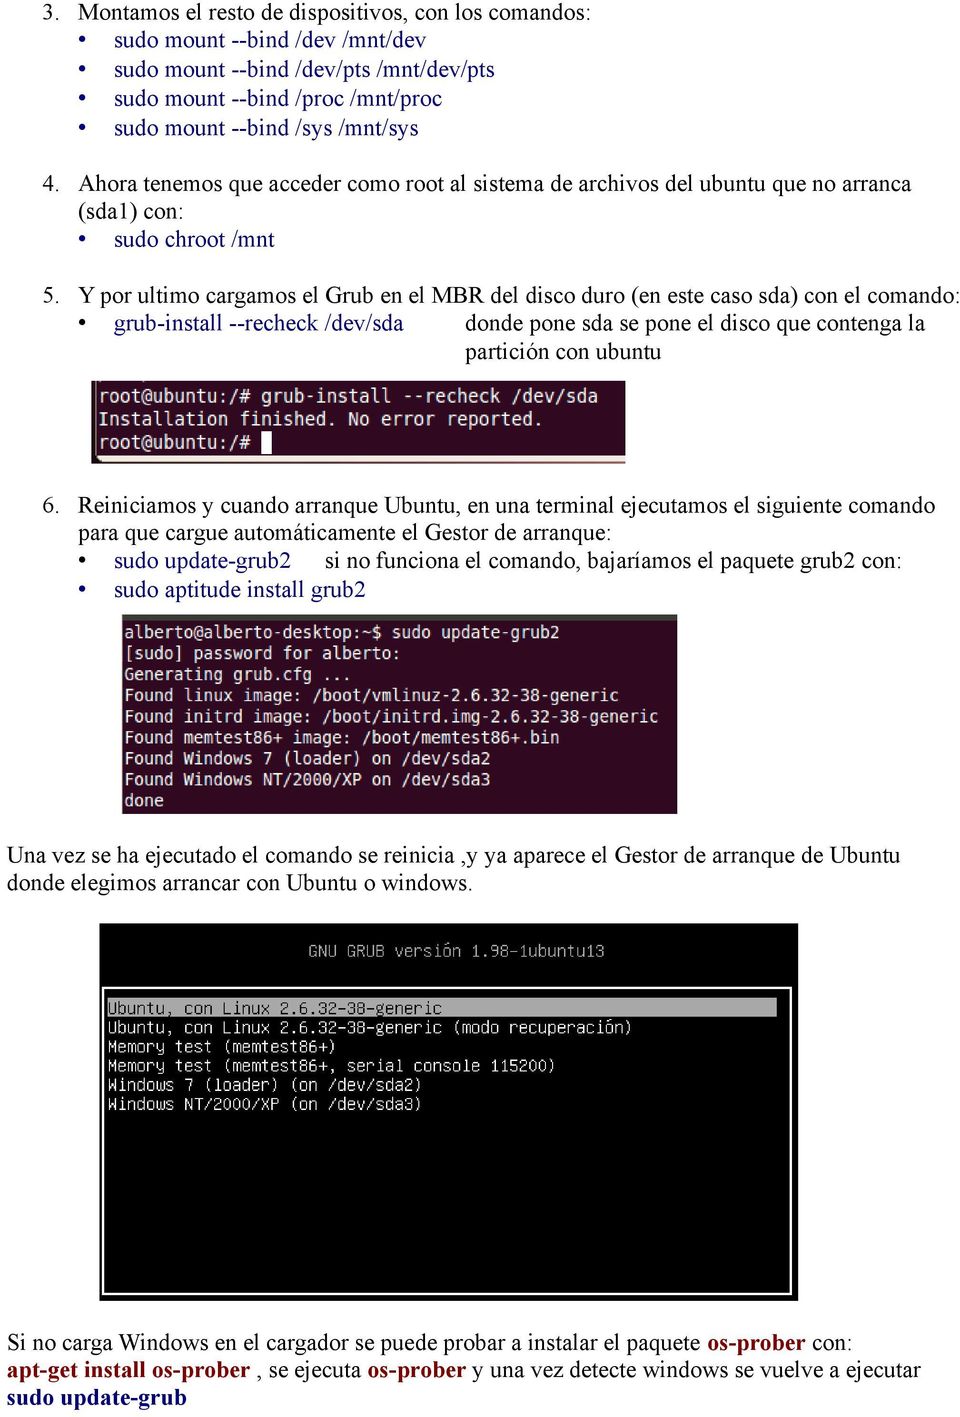 Y por ultimo cargamos el Grub en el MBR del disco duro (en este caso sda) con el comando: grub-install --recheck /dev/sda donde pone sda se pone el disco que contenga la partición con ubuntu 6.